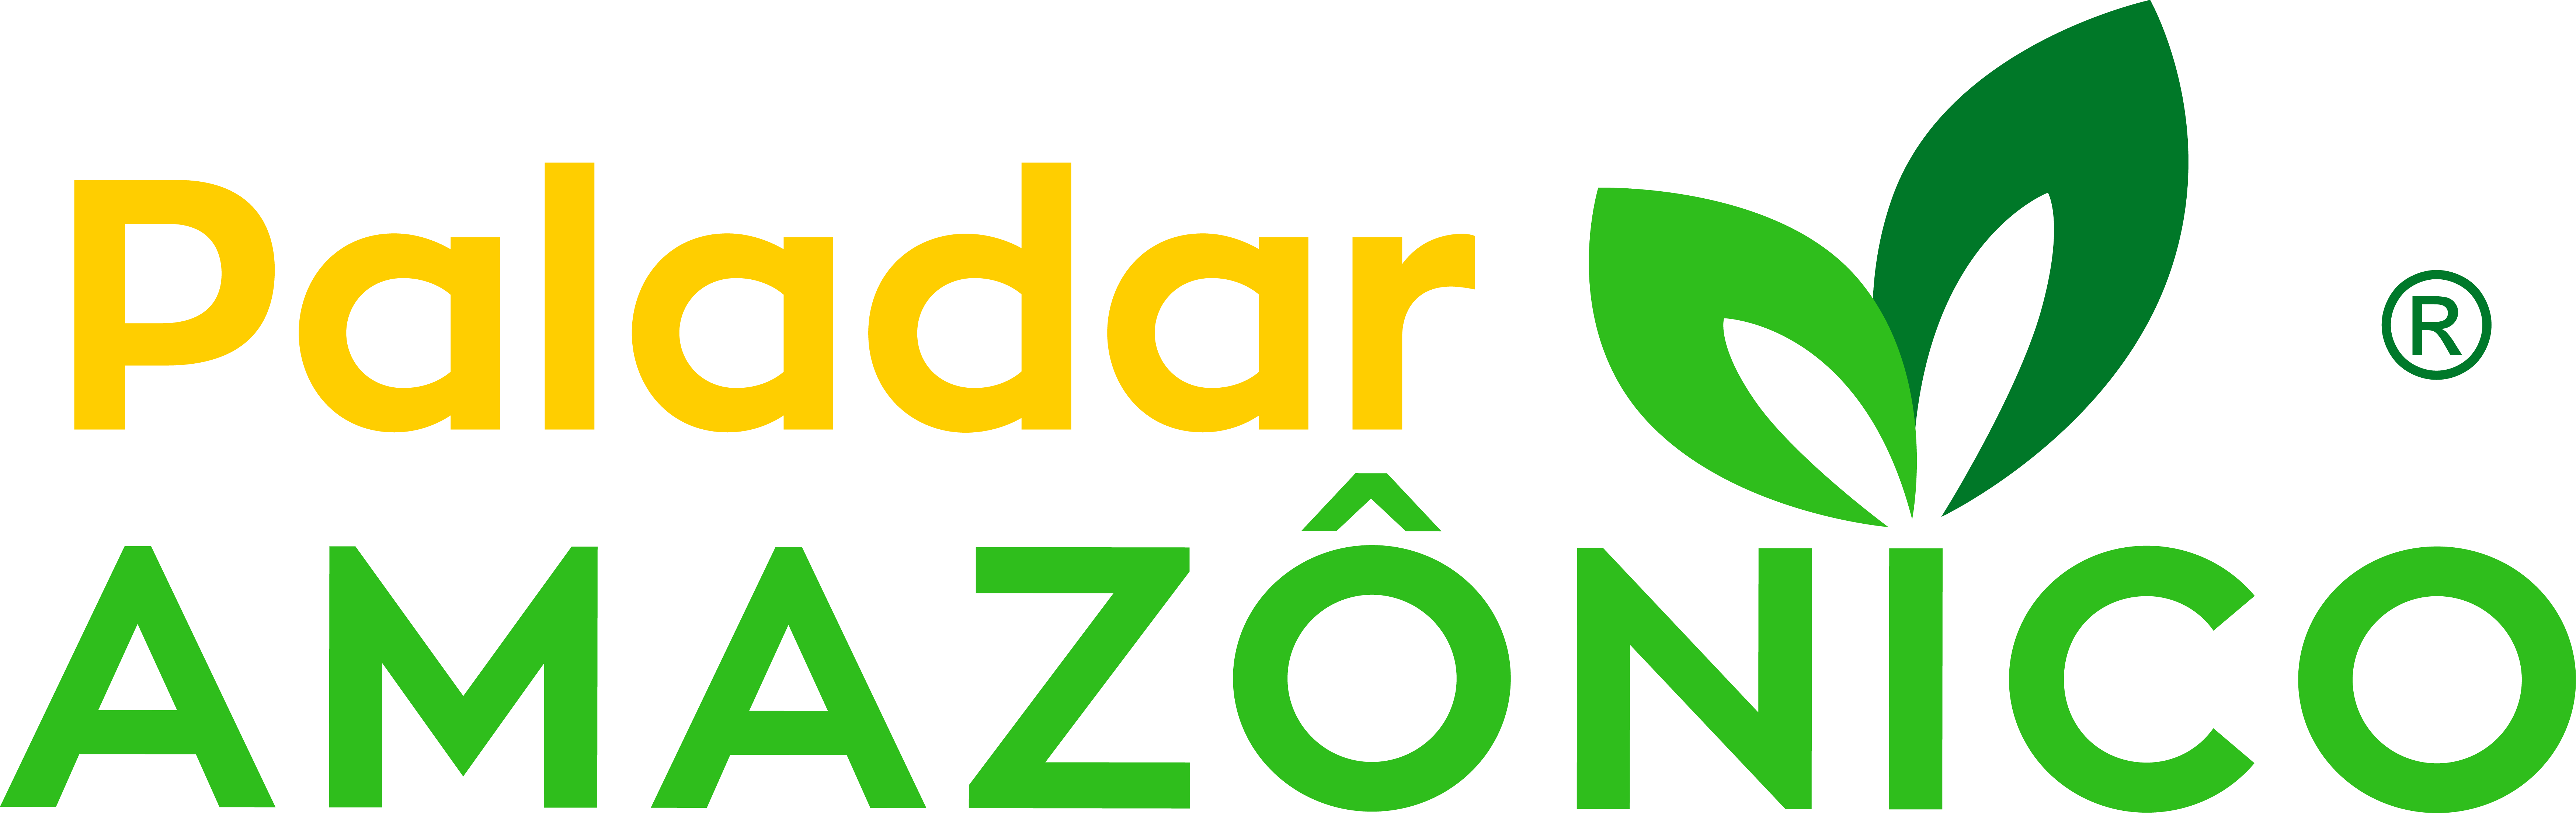 Paladar Amazônico Indústria e Comércio de Alimentos Ltda